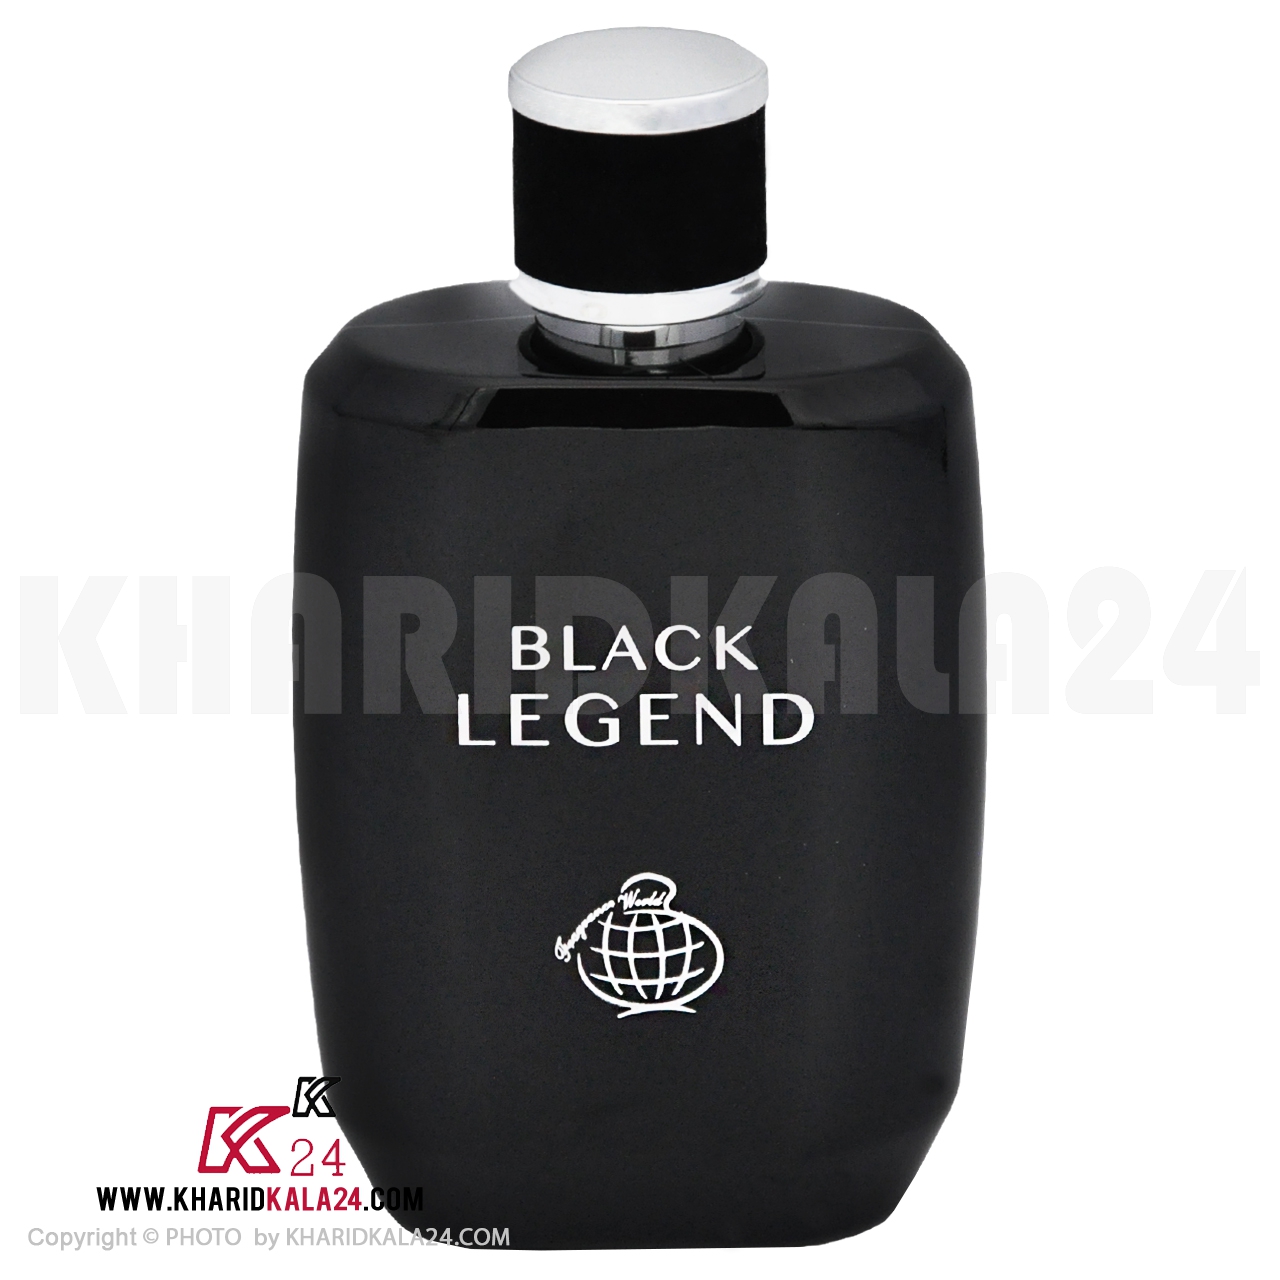 ادوپرفیوم فراگرنس ورد مدل Black legeng - تصویر شماره 2 - خریدکالا24